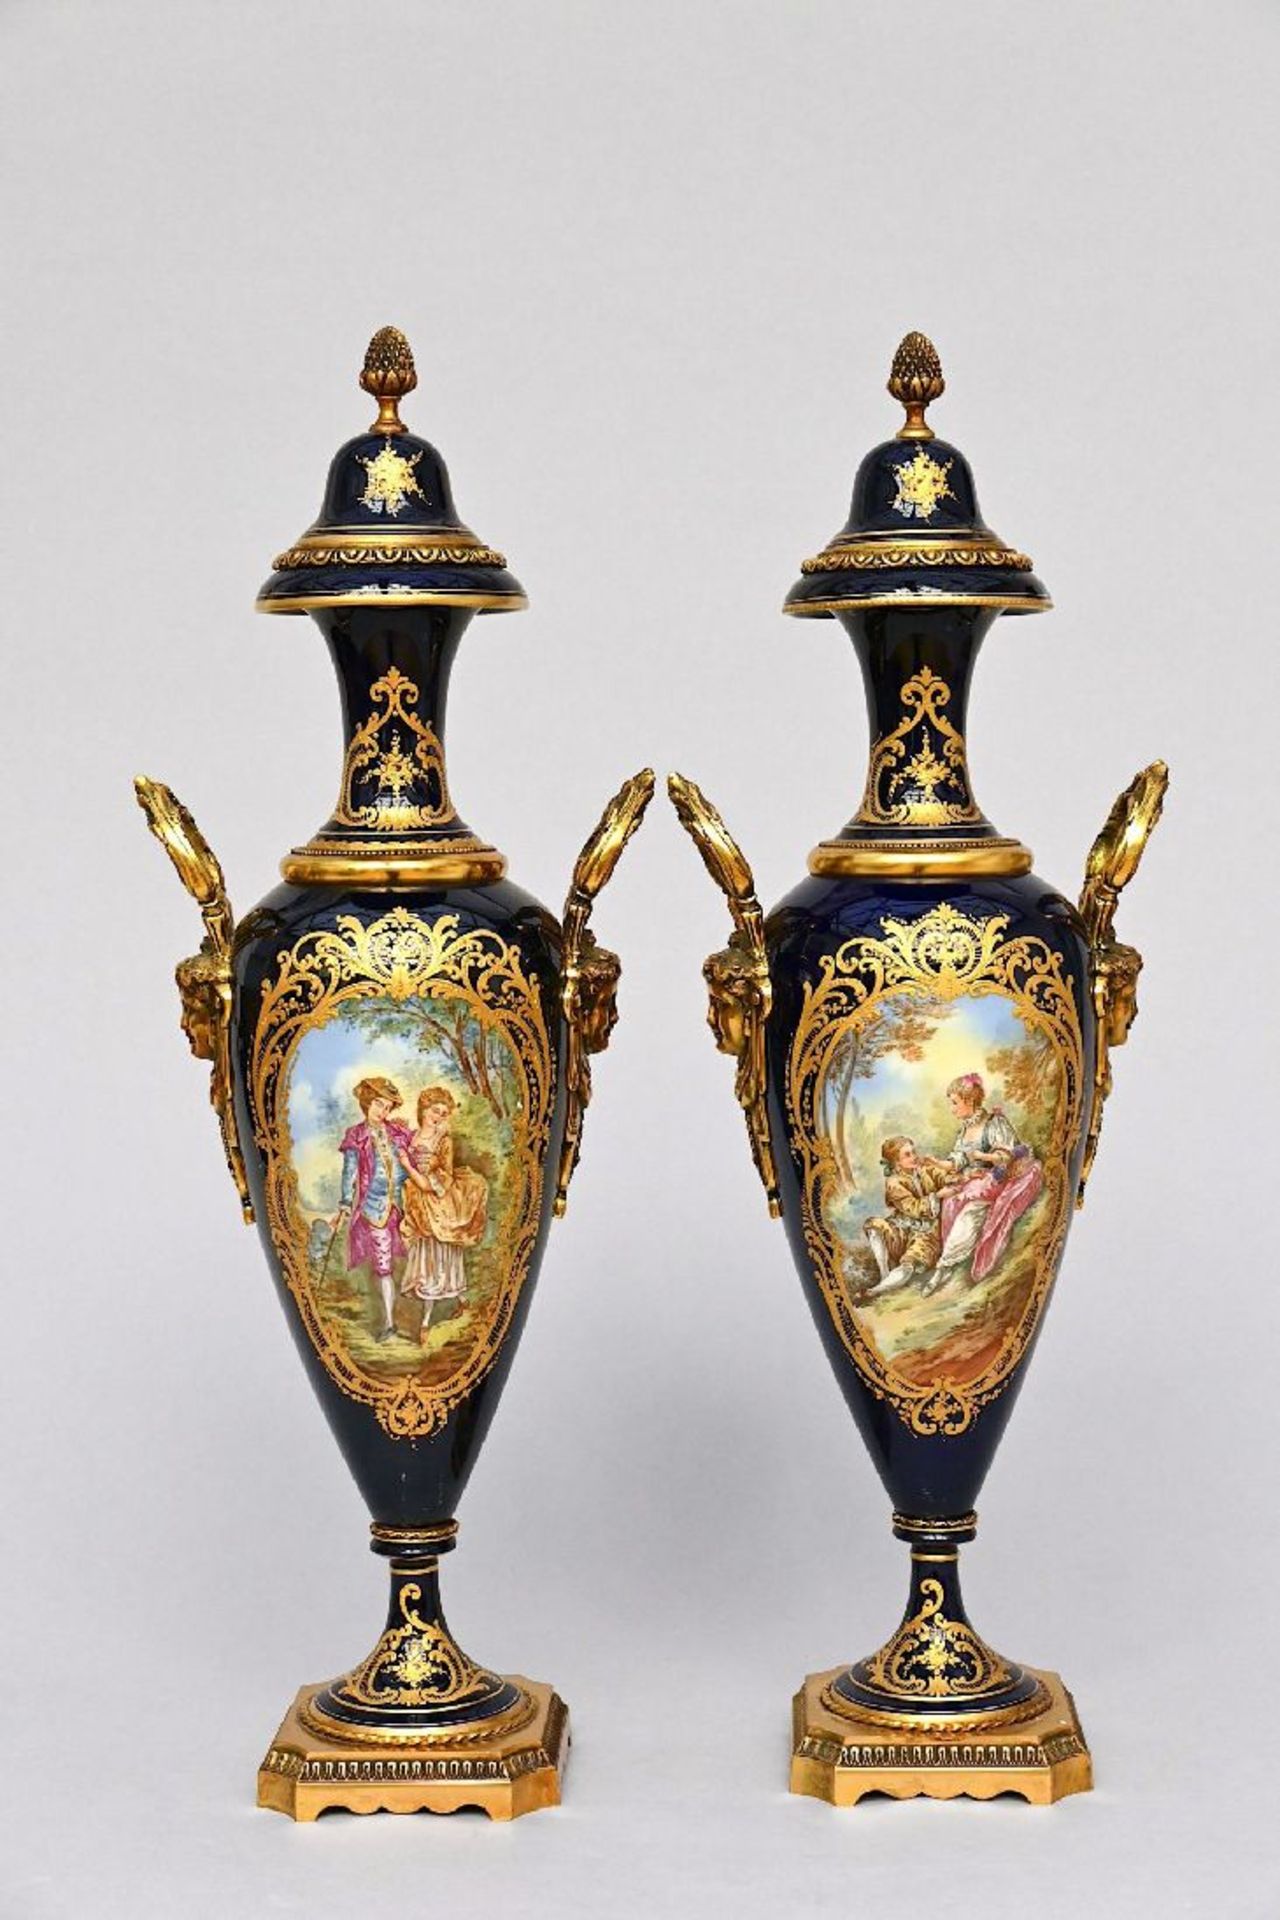 Pair of Sèvres style porcelain vases